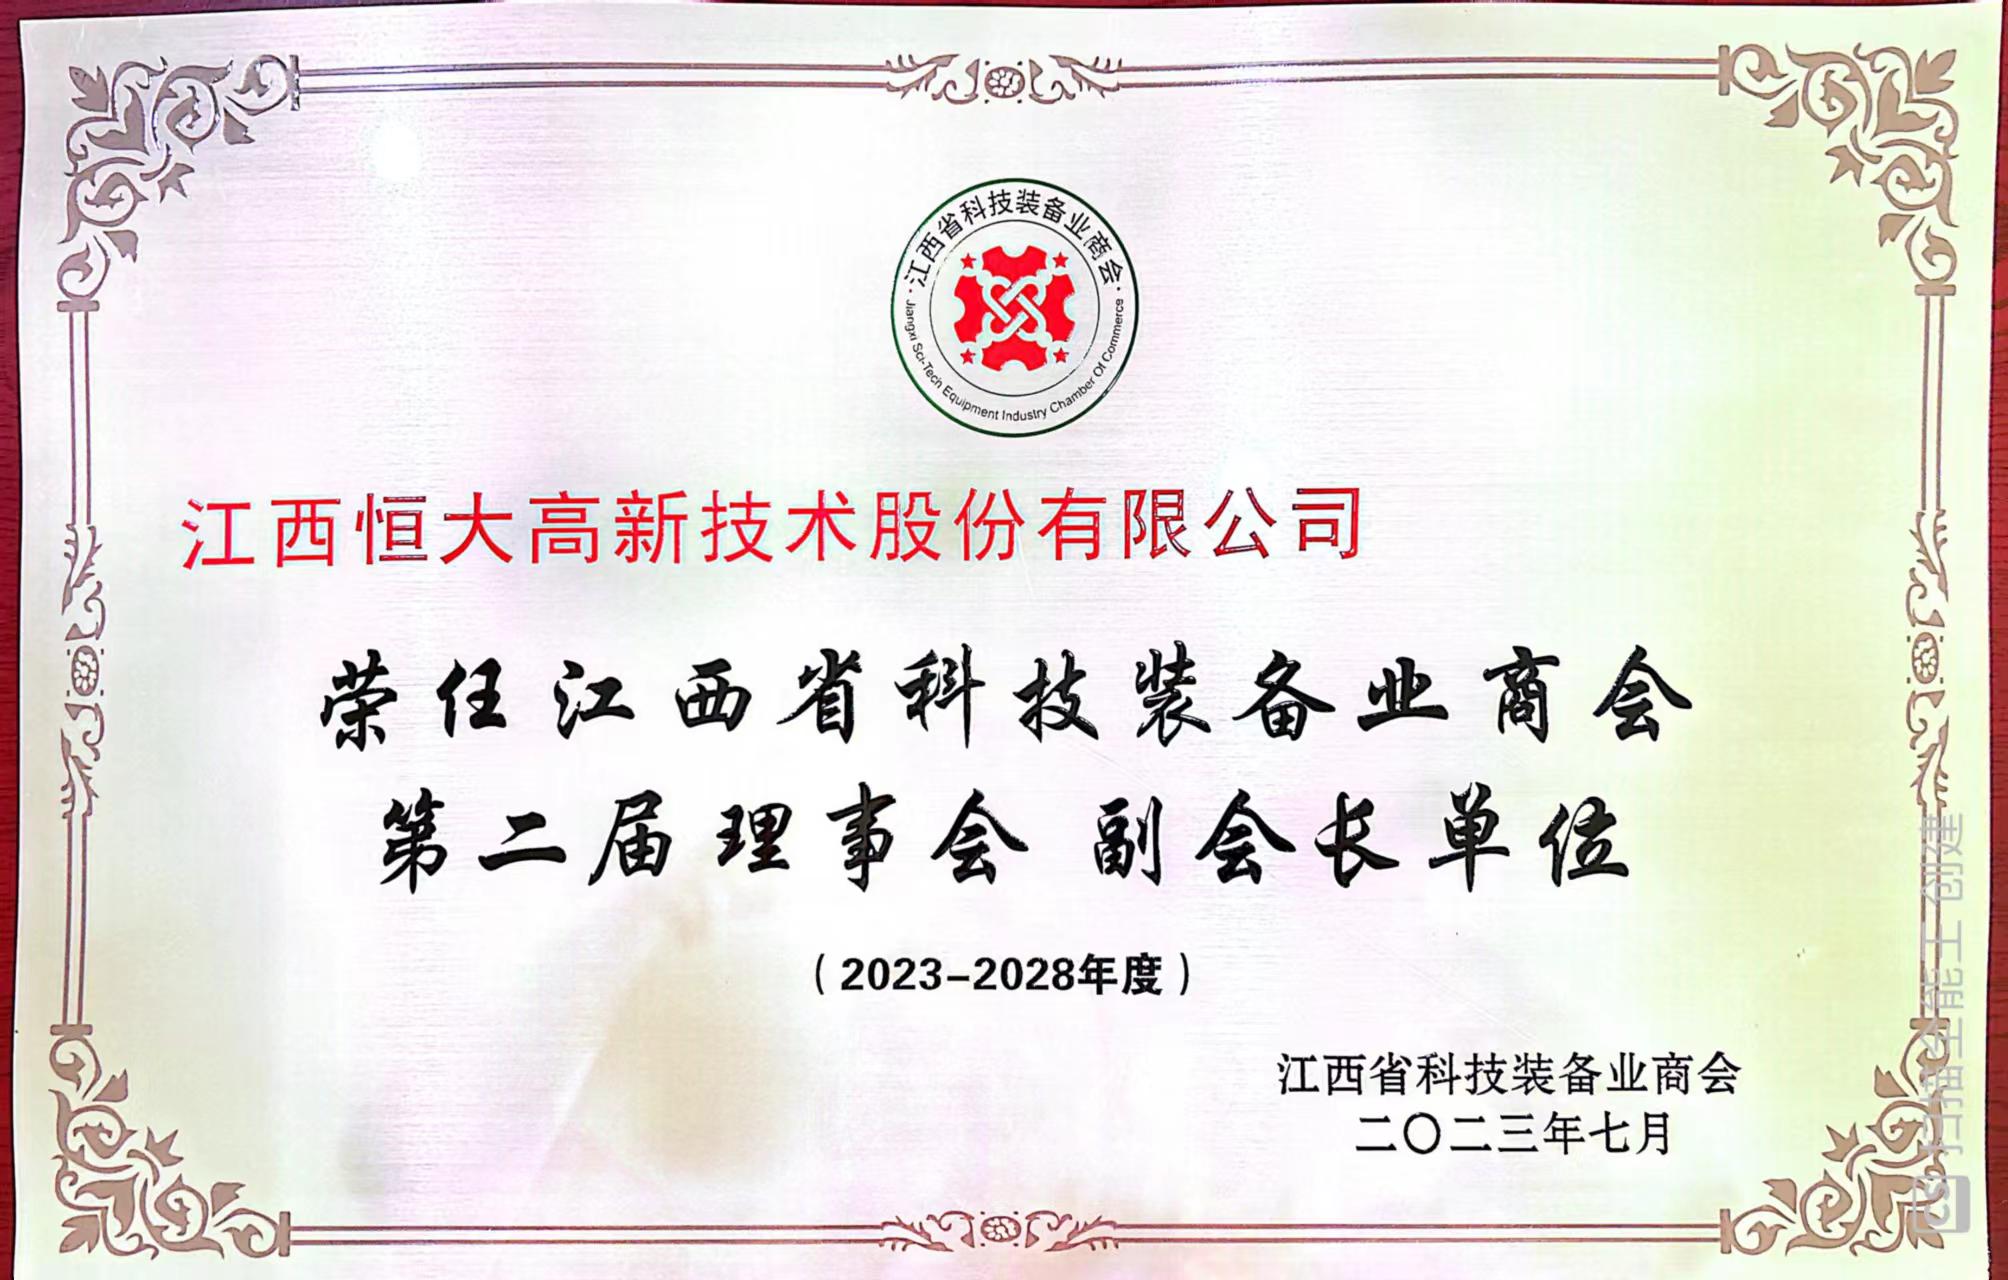 榮獲江西省科技裝備業商會第二理事會副會長單位